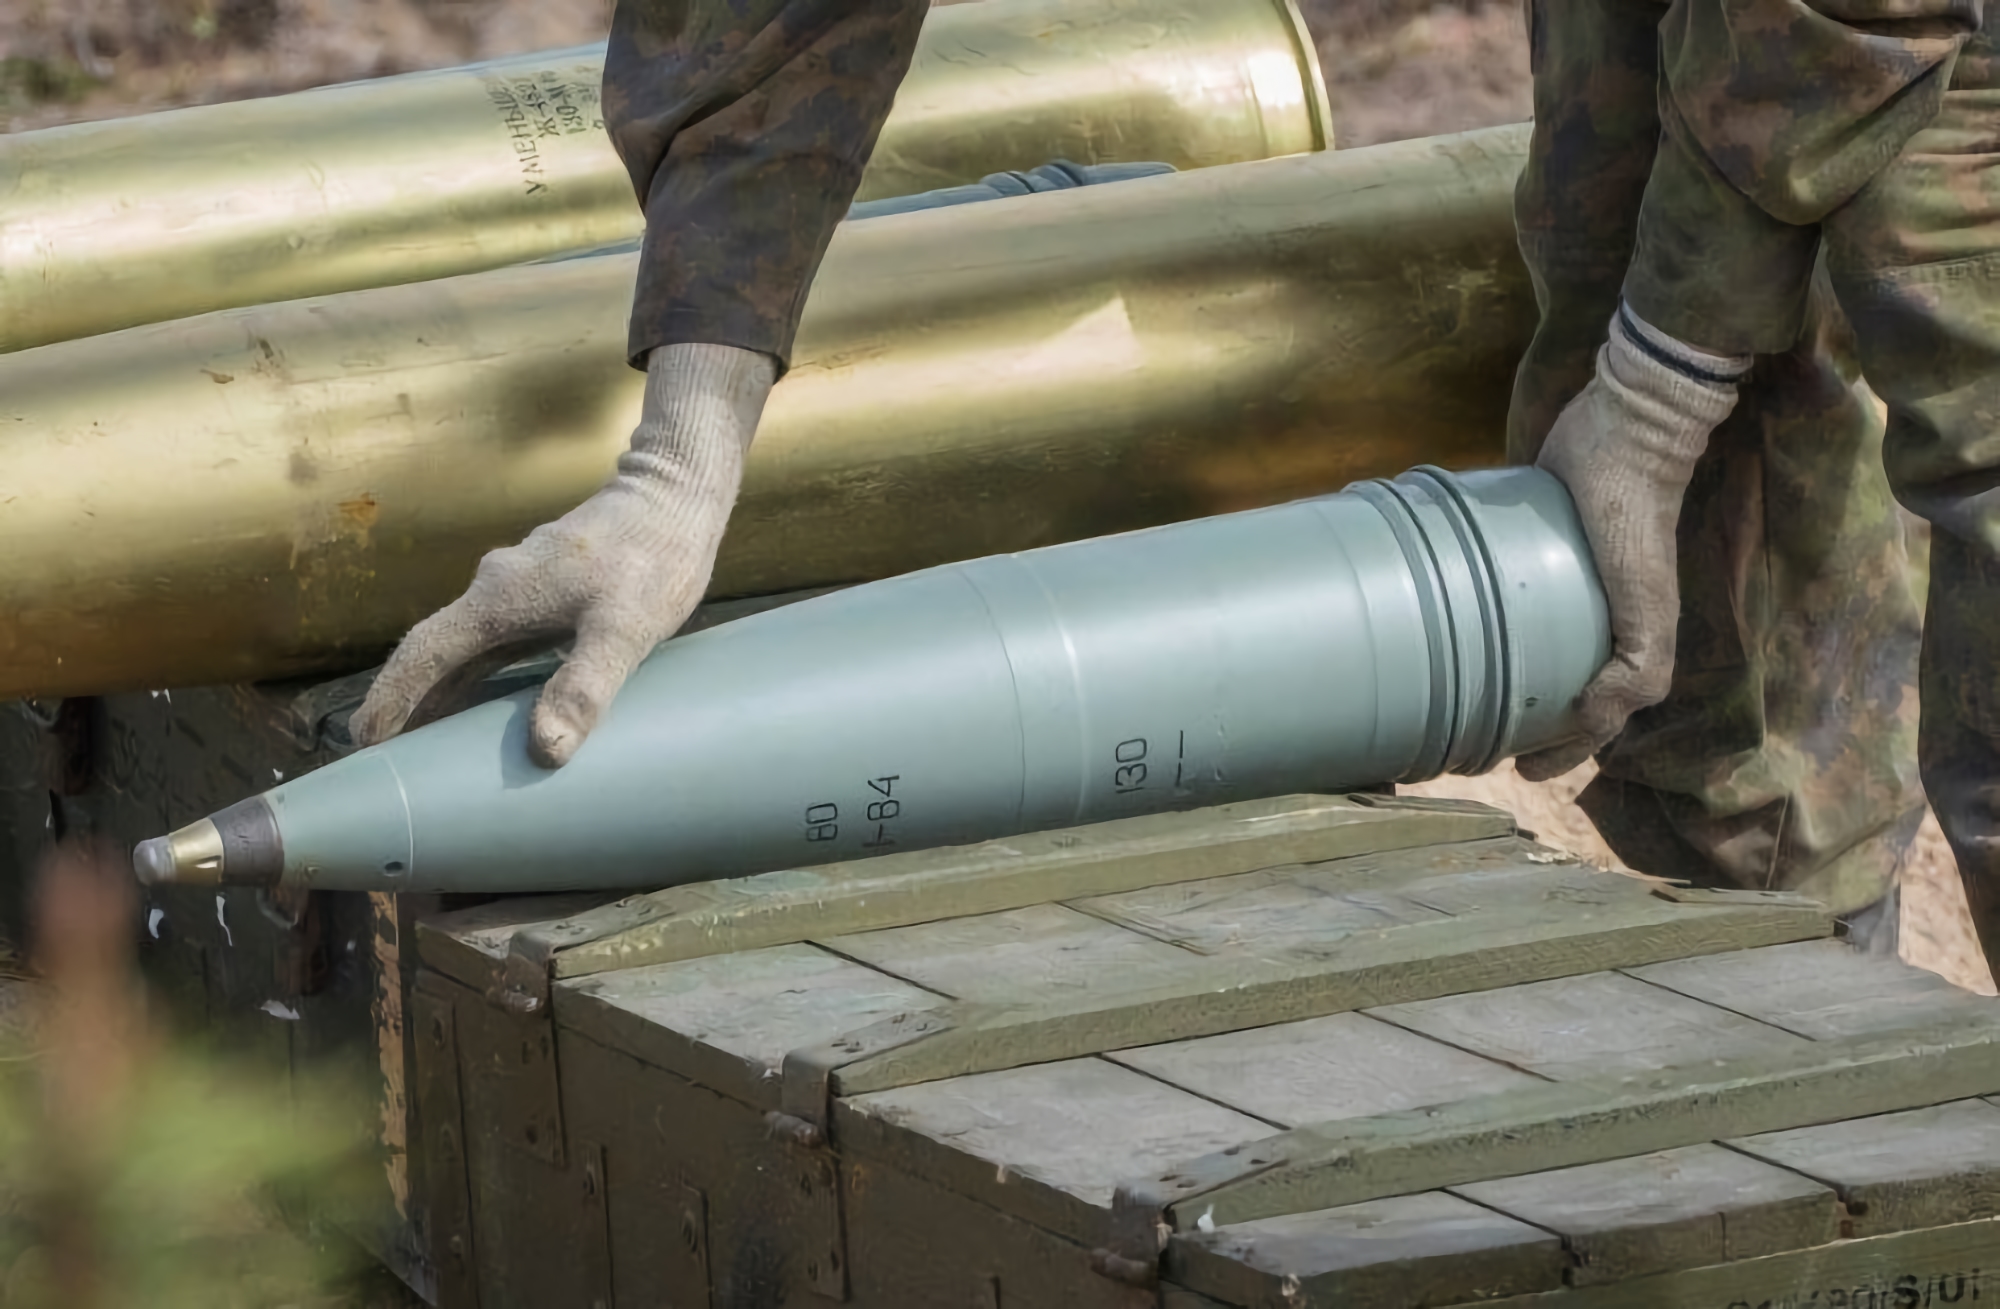 L'Ukraine, avec un partenaire, construit une usine pour produire des munitions aux normes de l'OTAN.